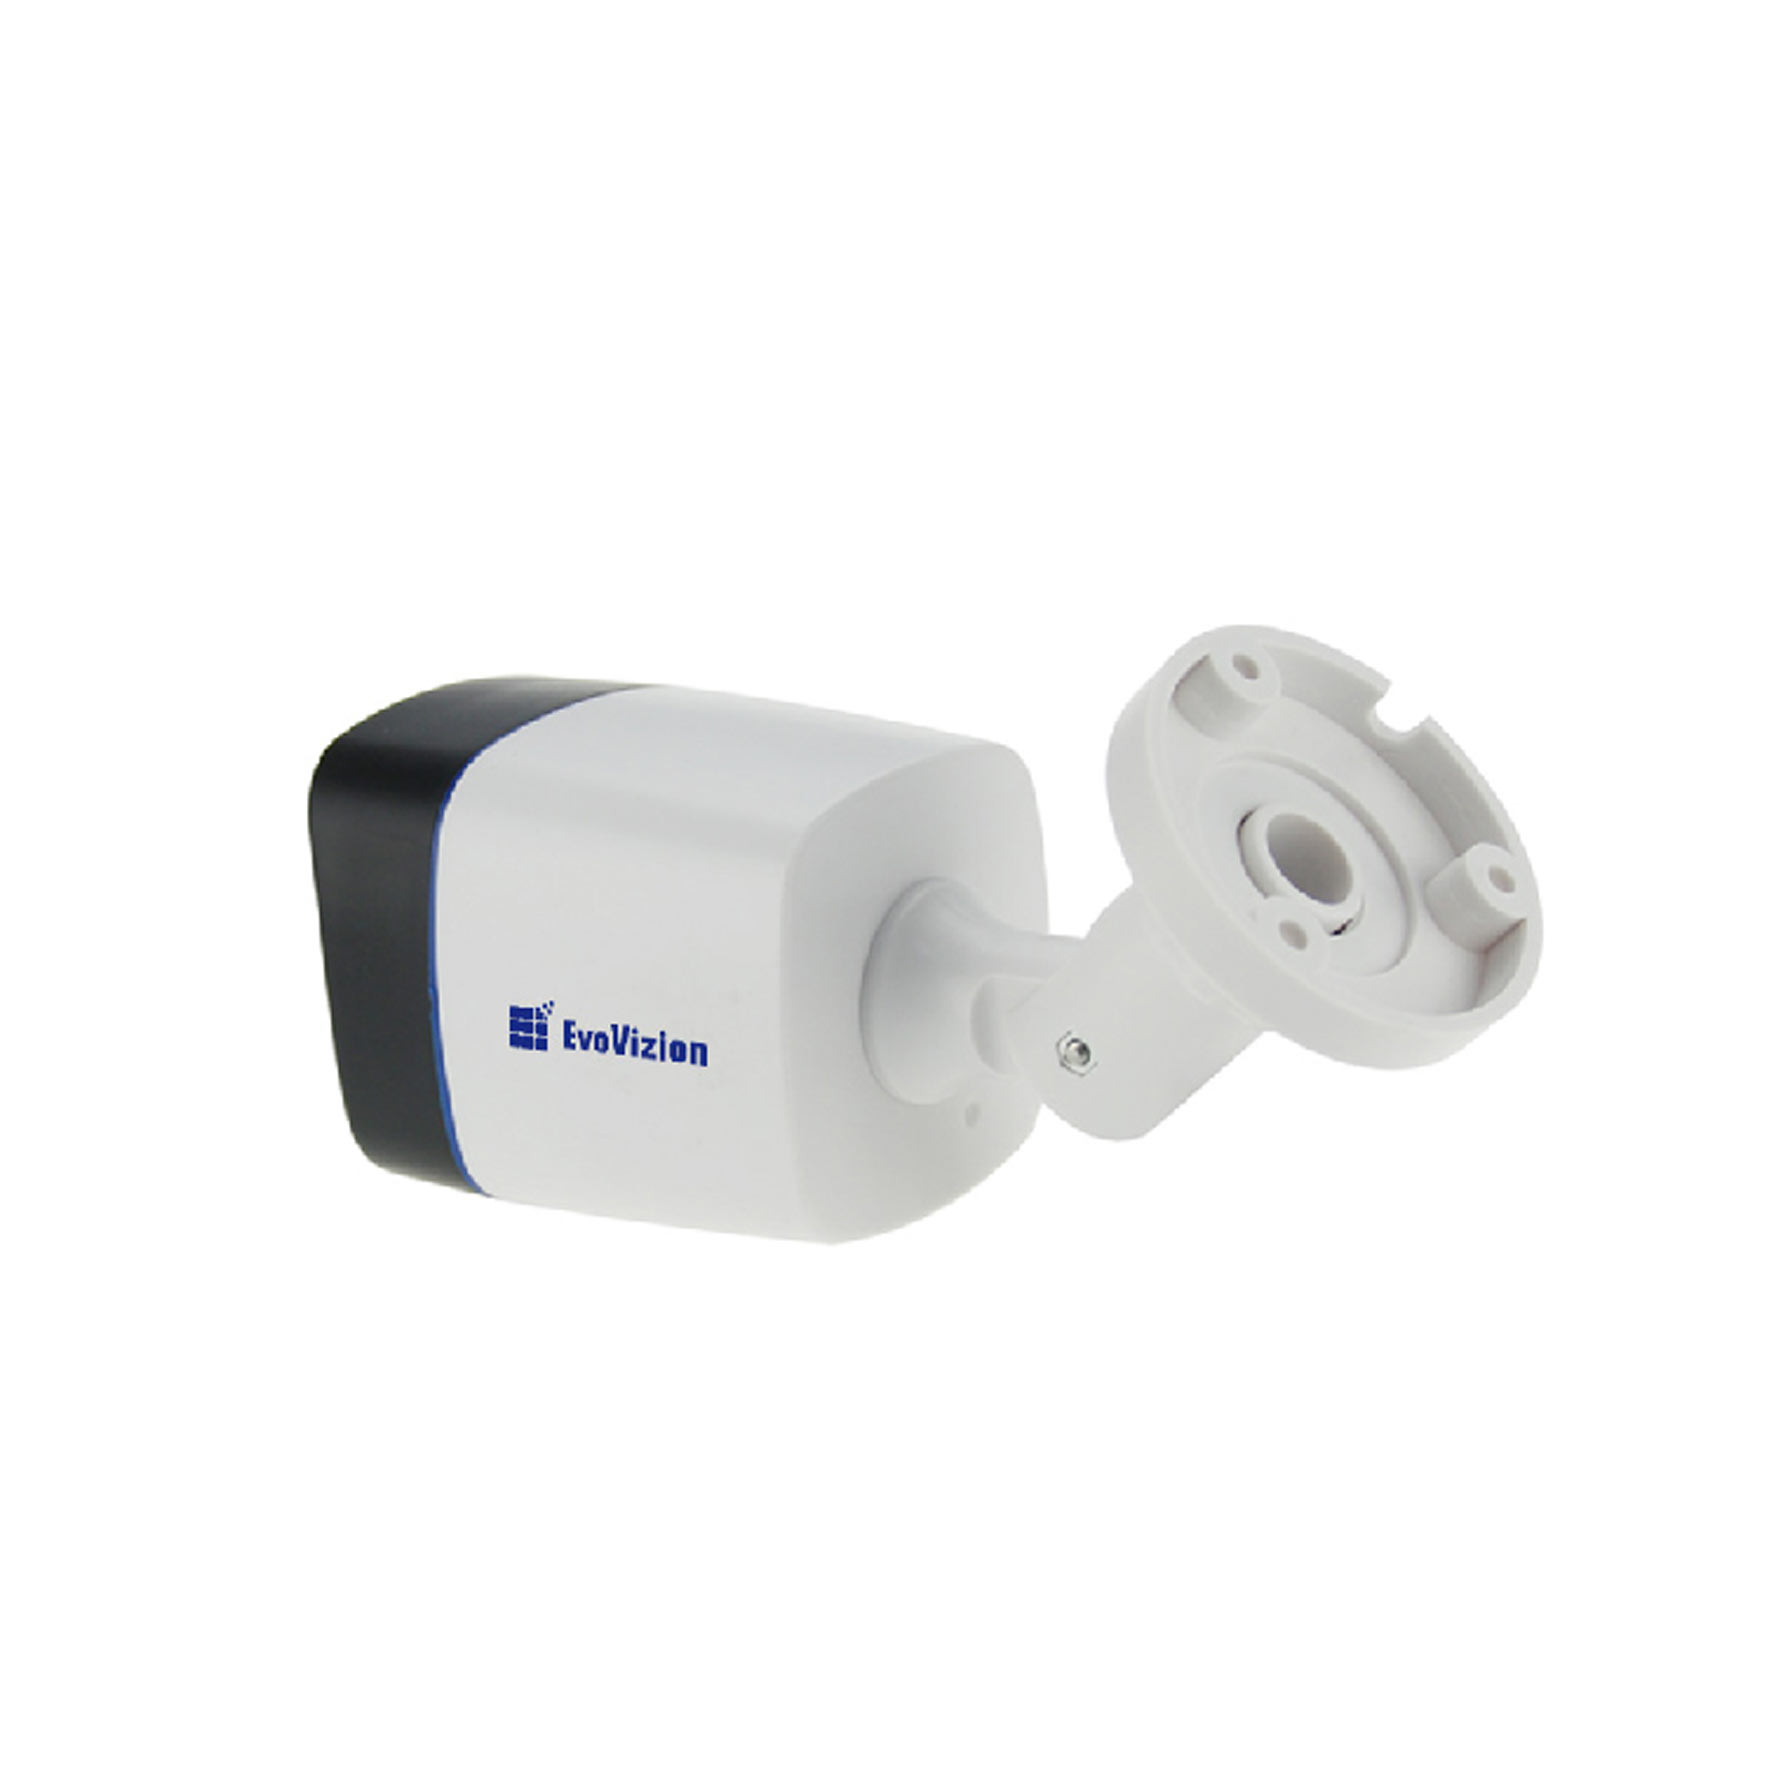 Цилиндрическая камера EvoVizion AHD-825-100